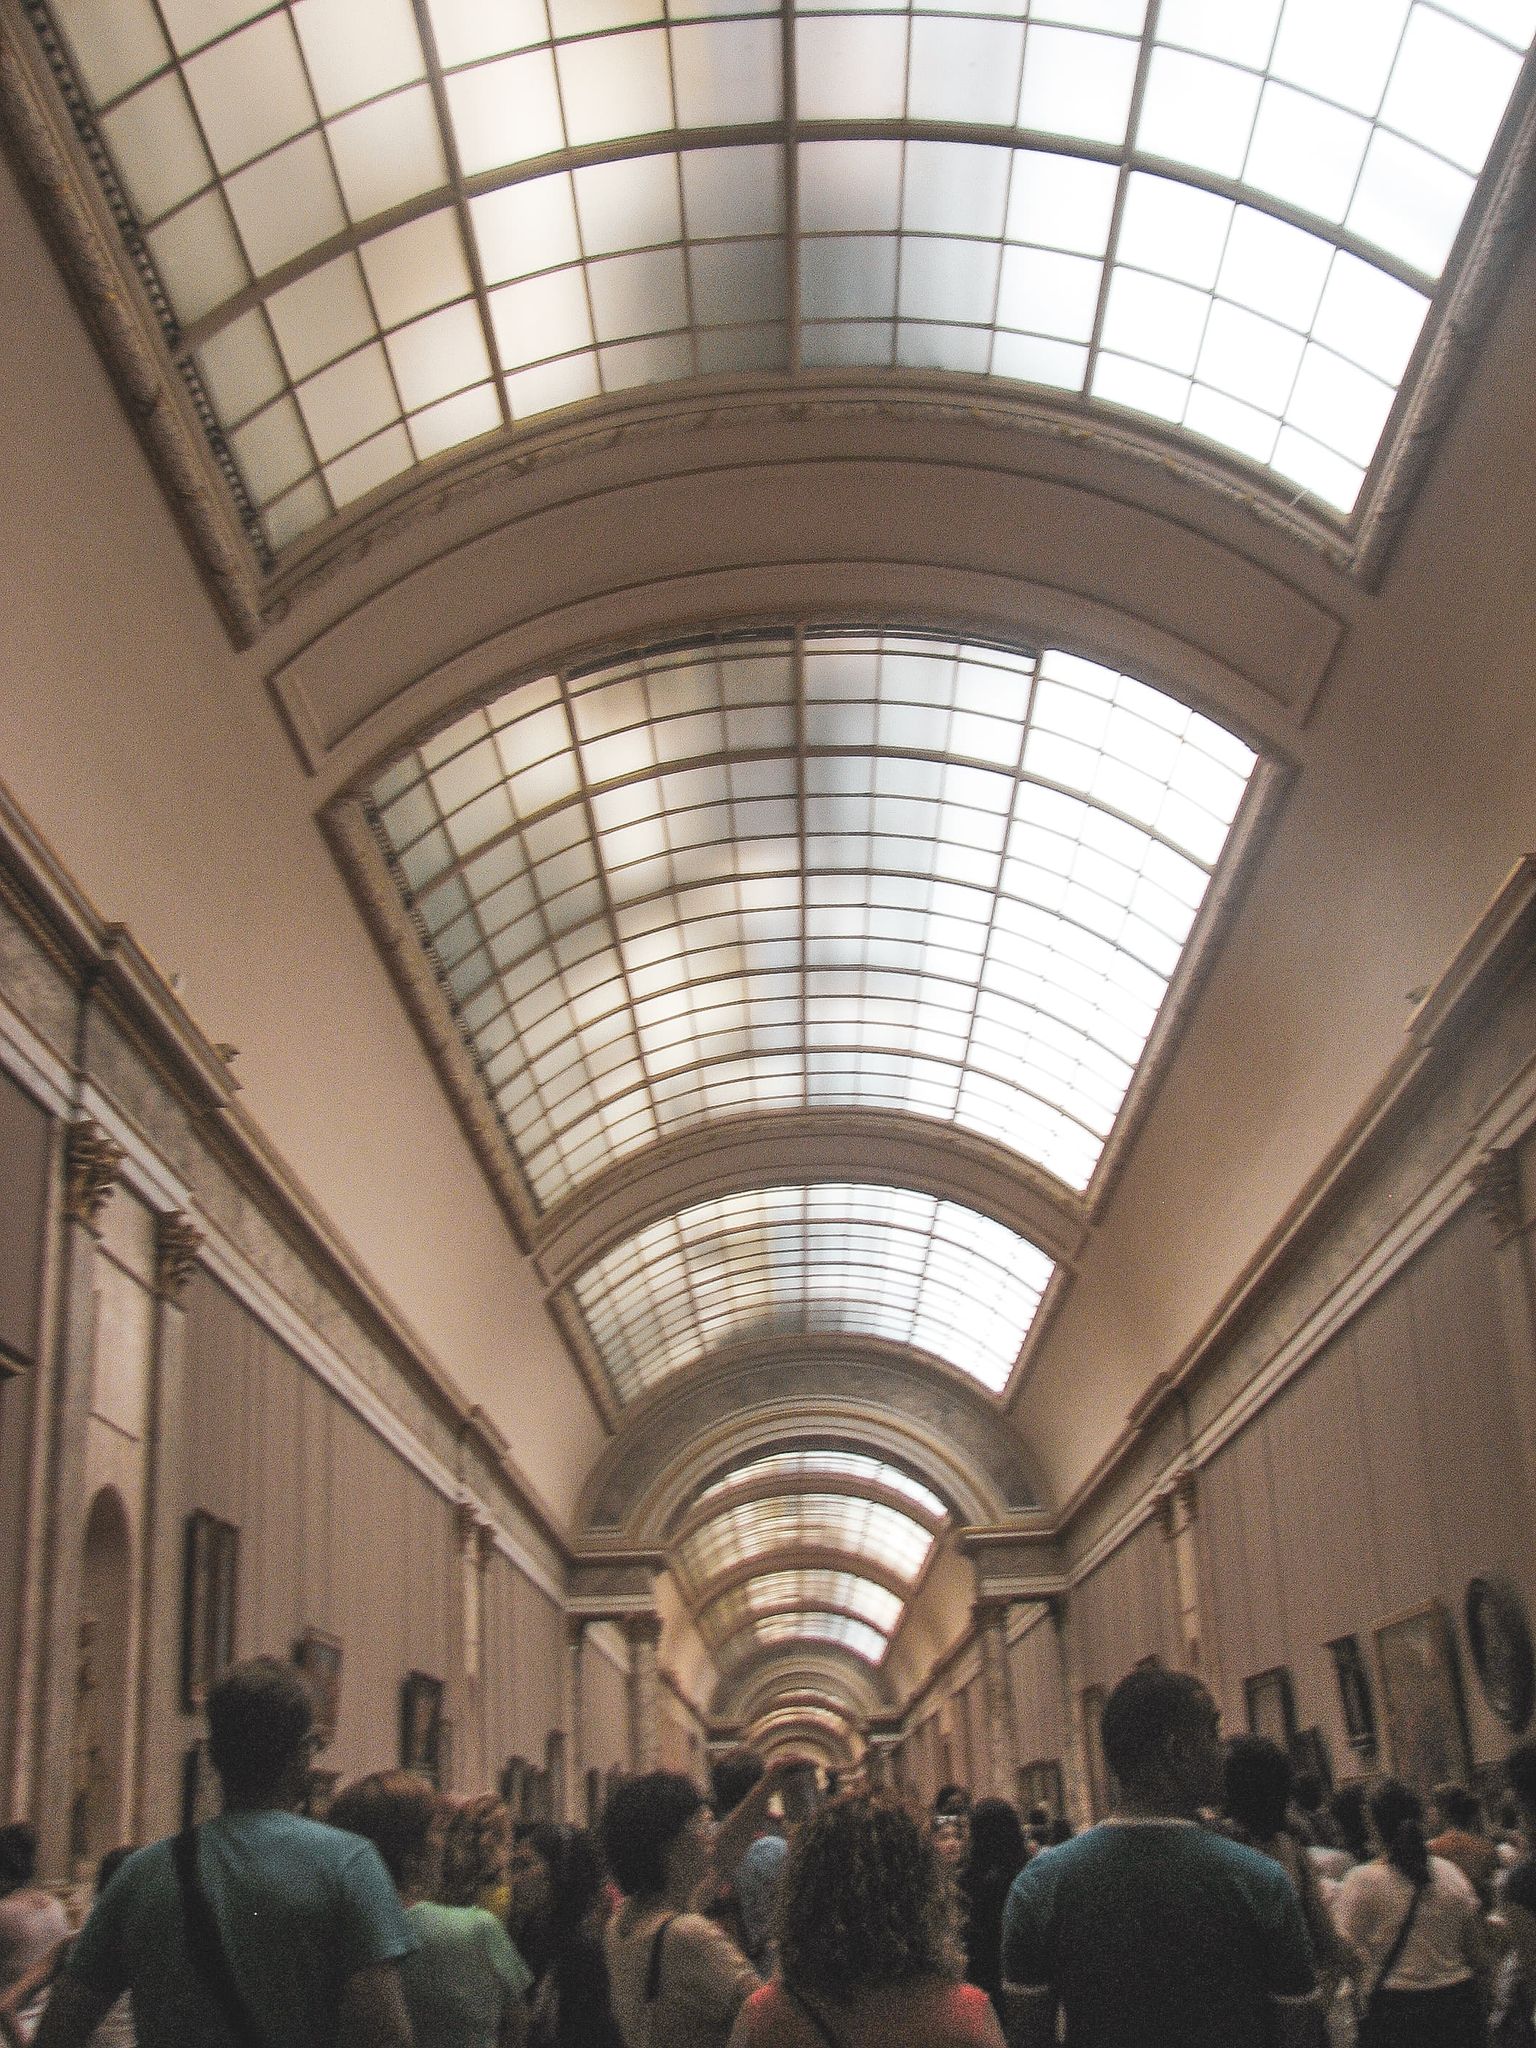 Corredor do Museu do Louvre com visitantes